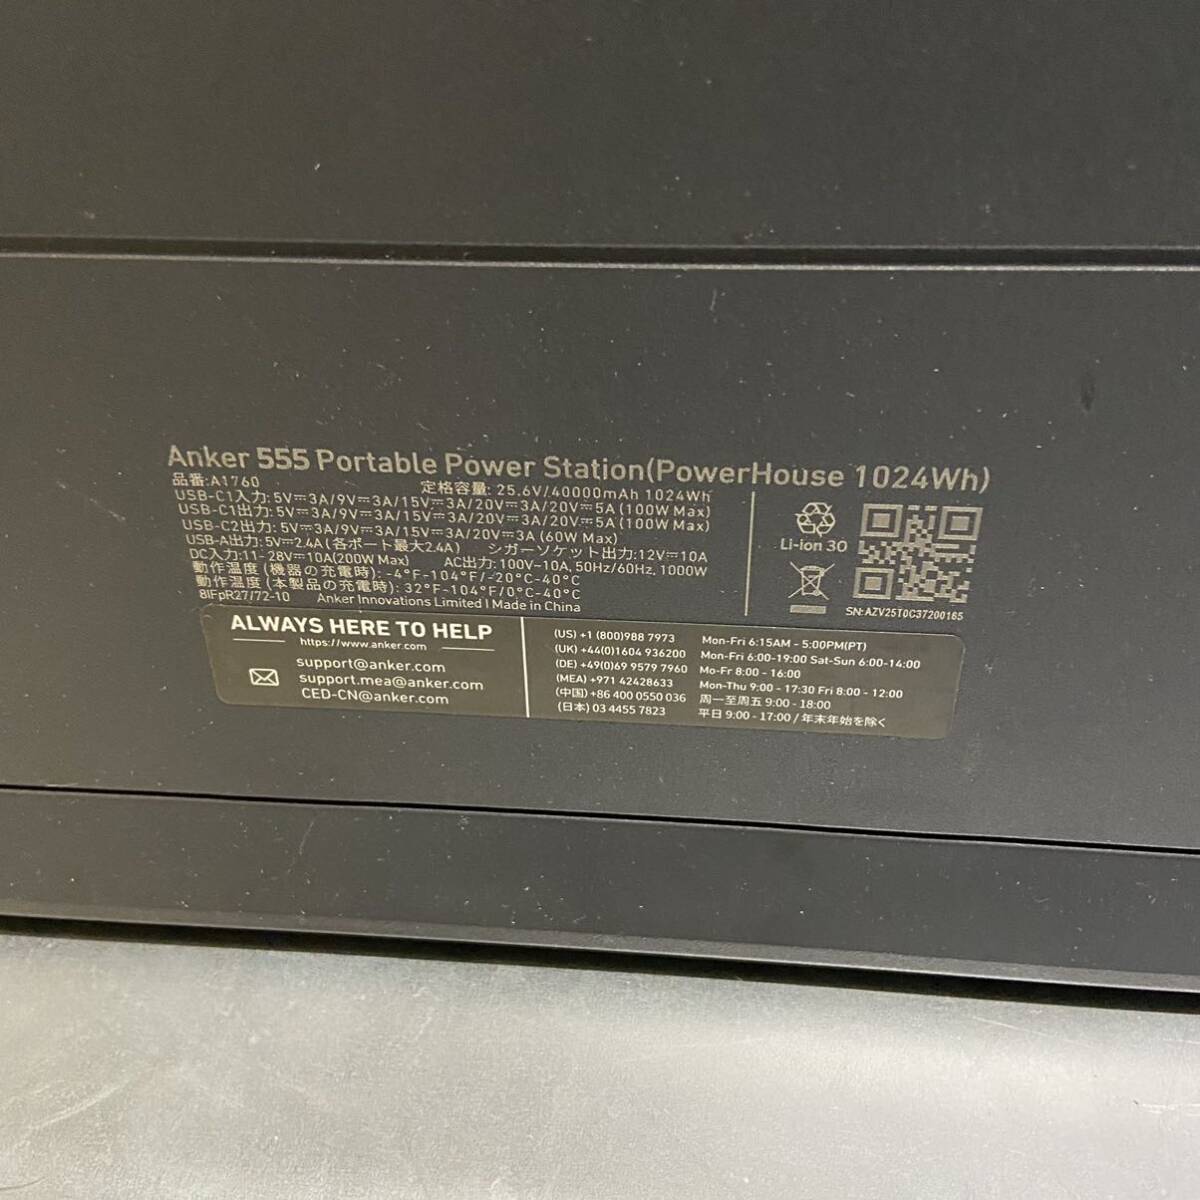 Anker якорь Anker 555 Portable Power Station PowerHouse 1024Wh Poe tab корпус только аккумулятор нет утиль 